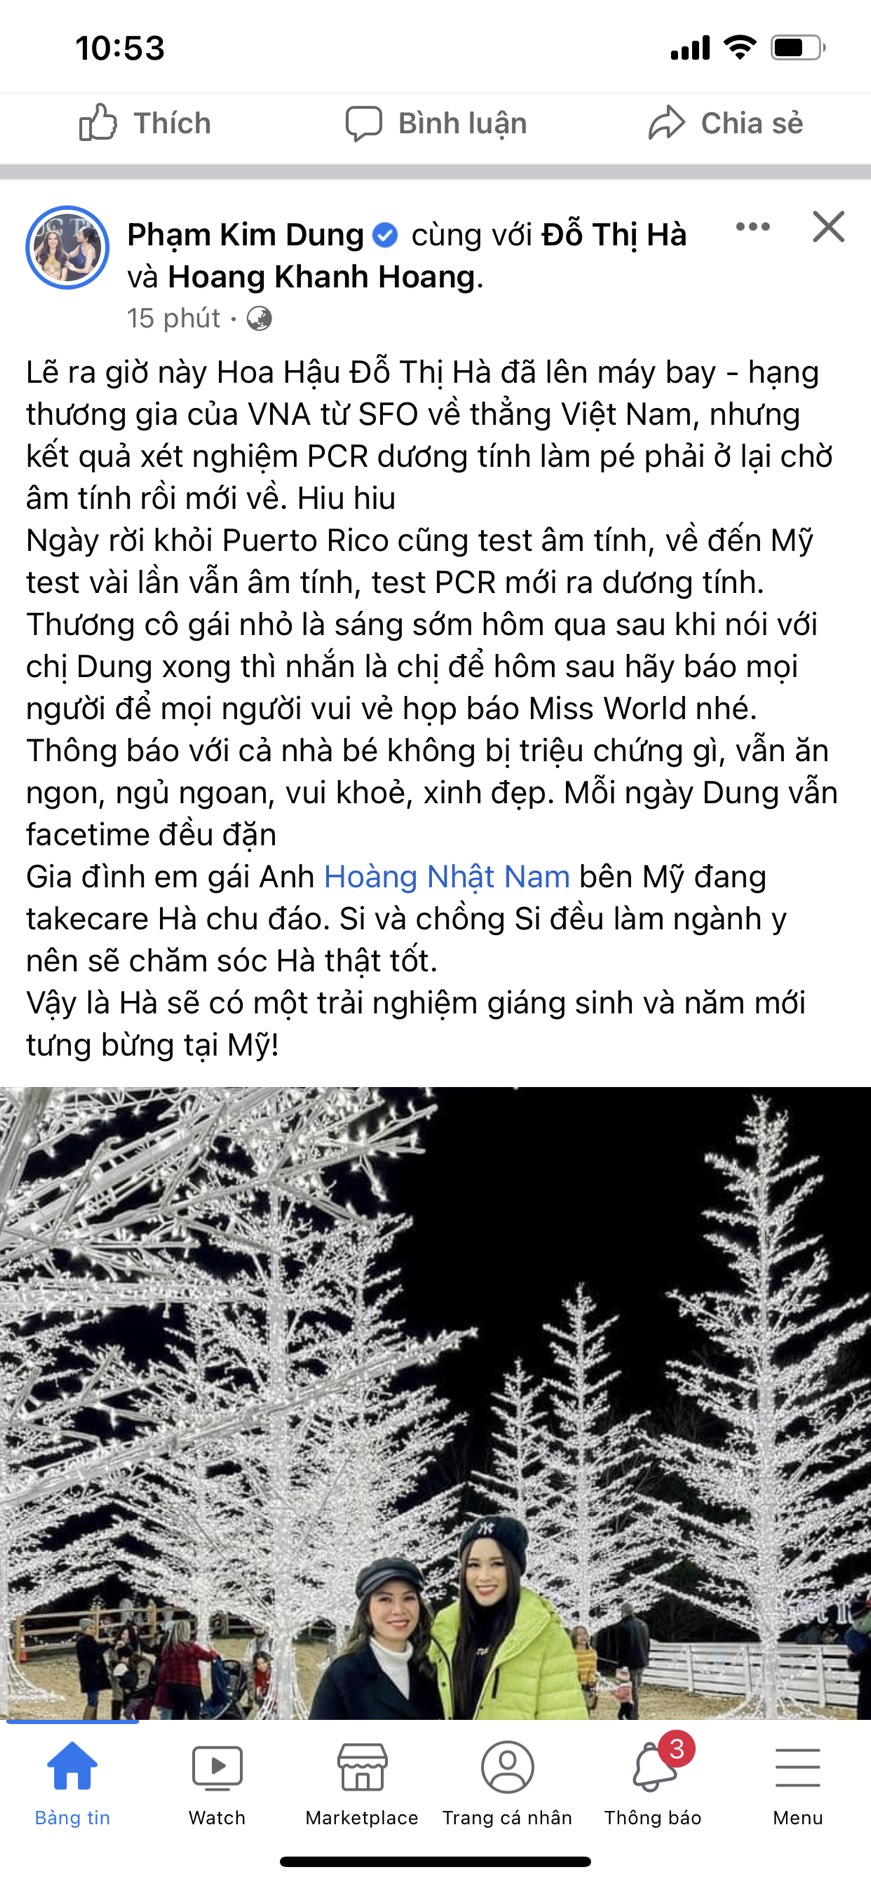 Bài viết được bà Phạm Kim Dung đăng tải cách đây ít giờ